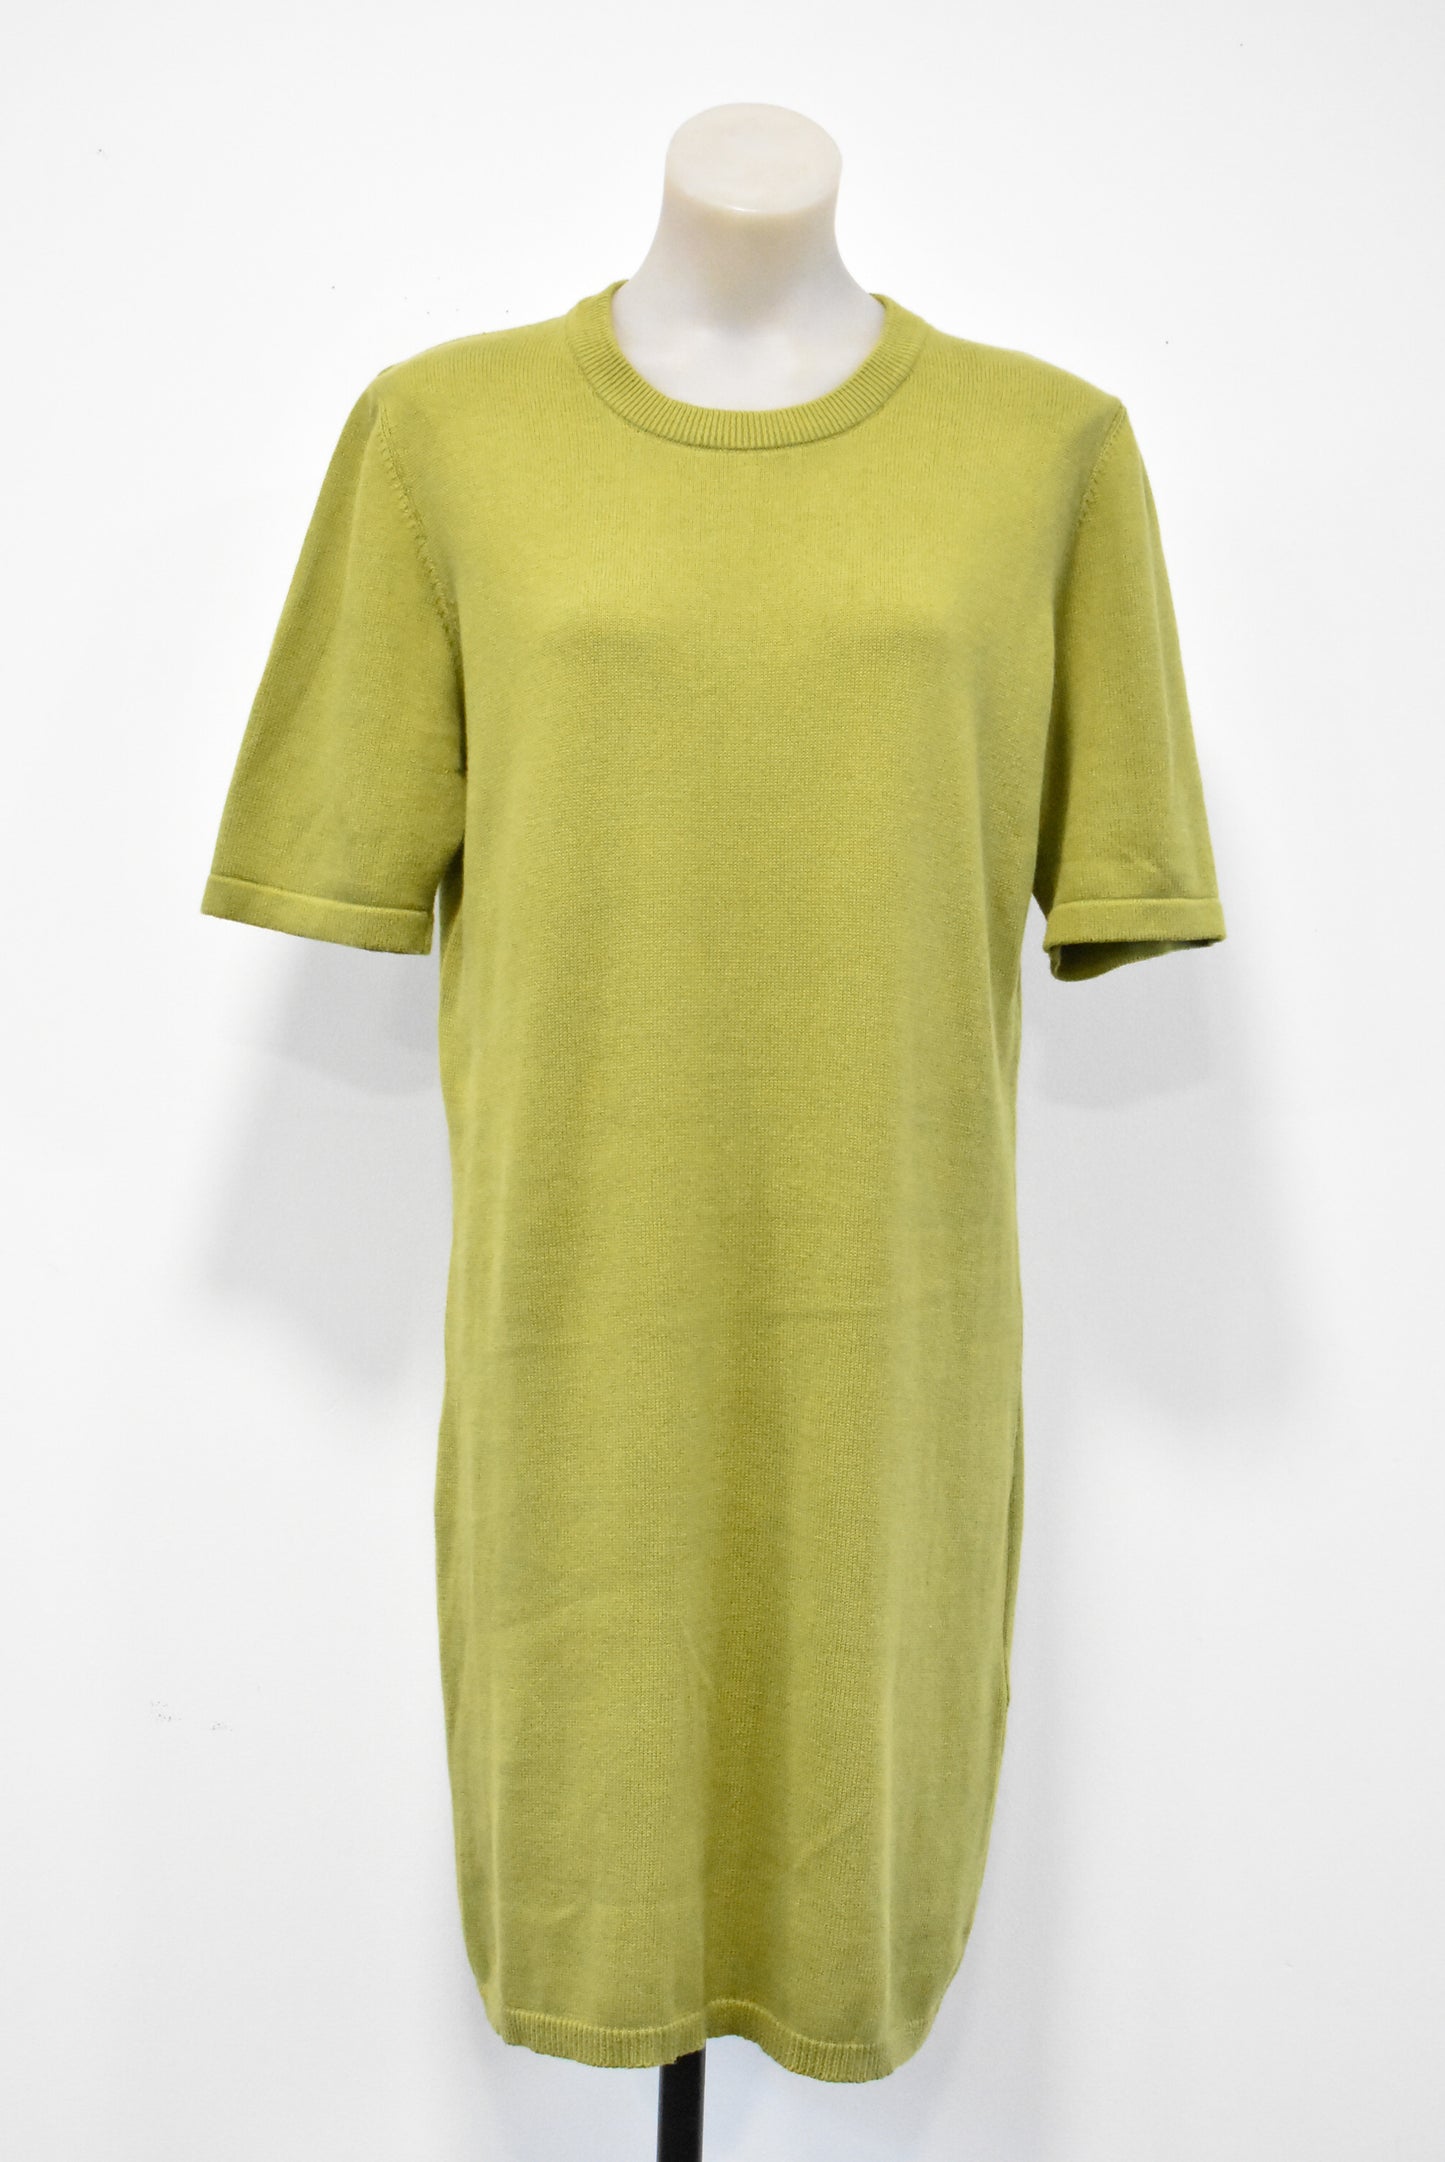 Kowtow olive green cotton knit dress, M